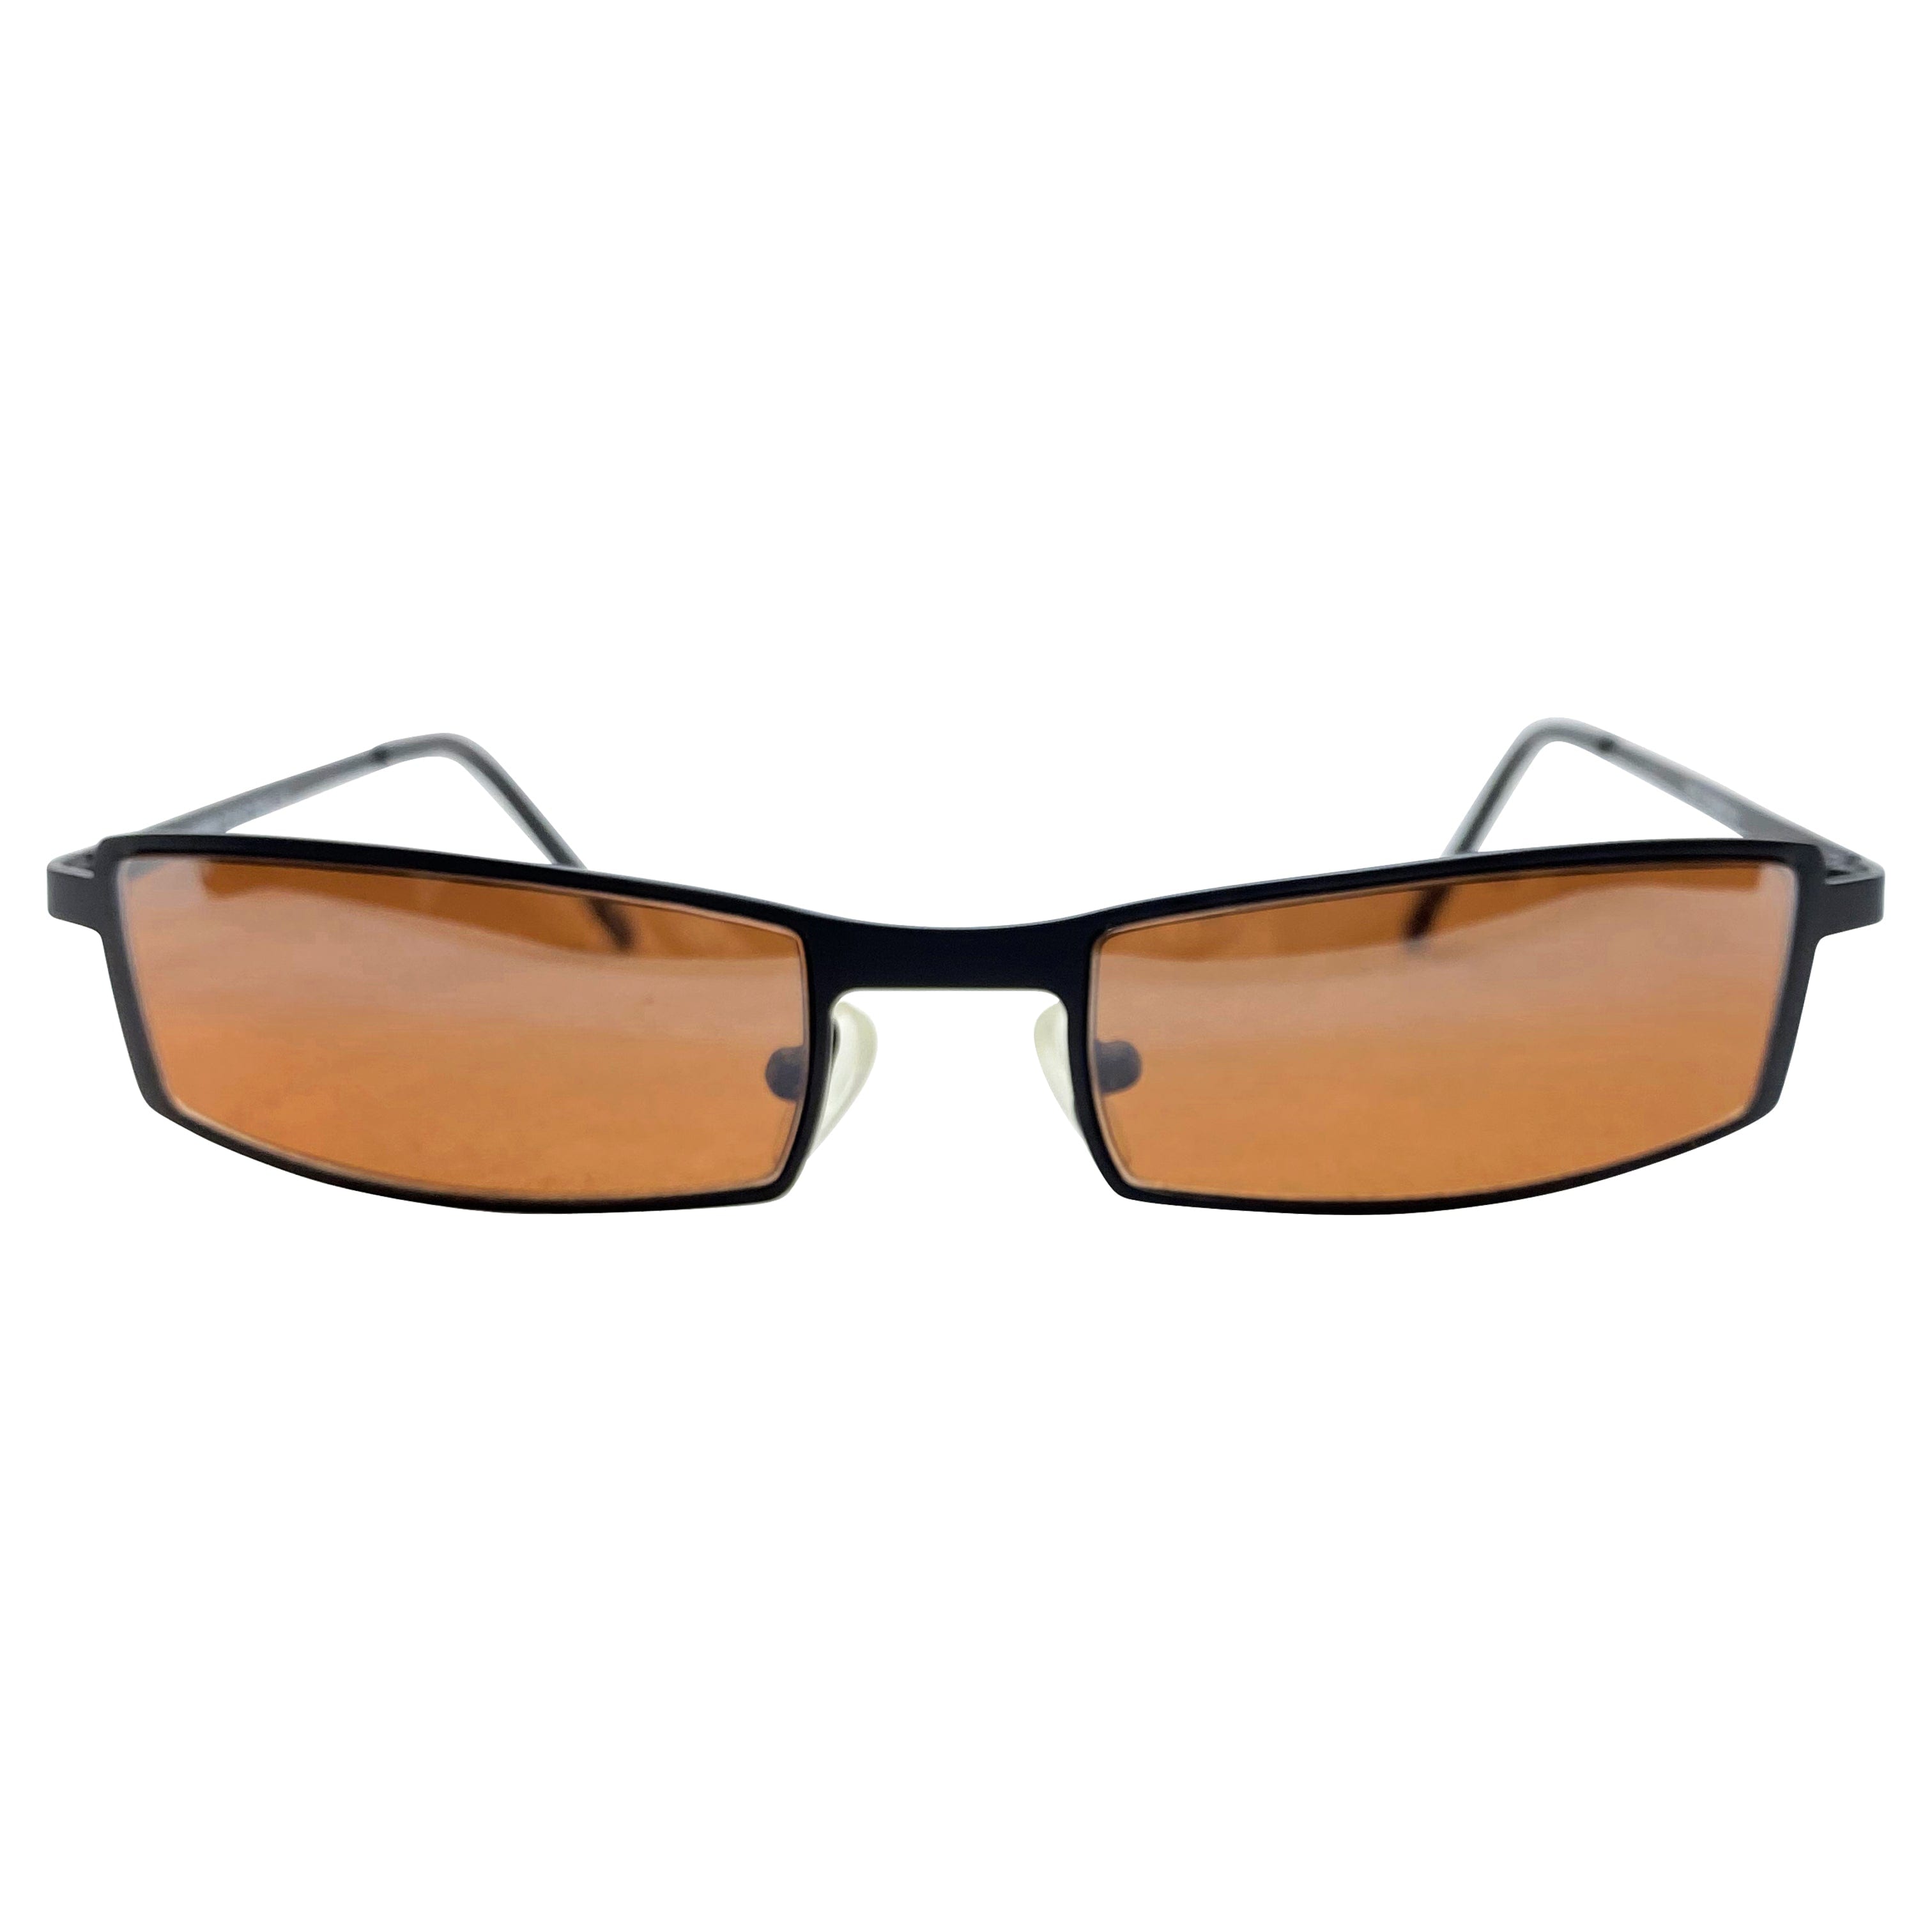 TITO Black/Copper Sunglasses | Blue-Blocker | Day Driving